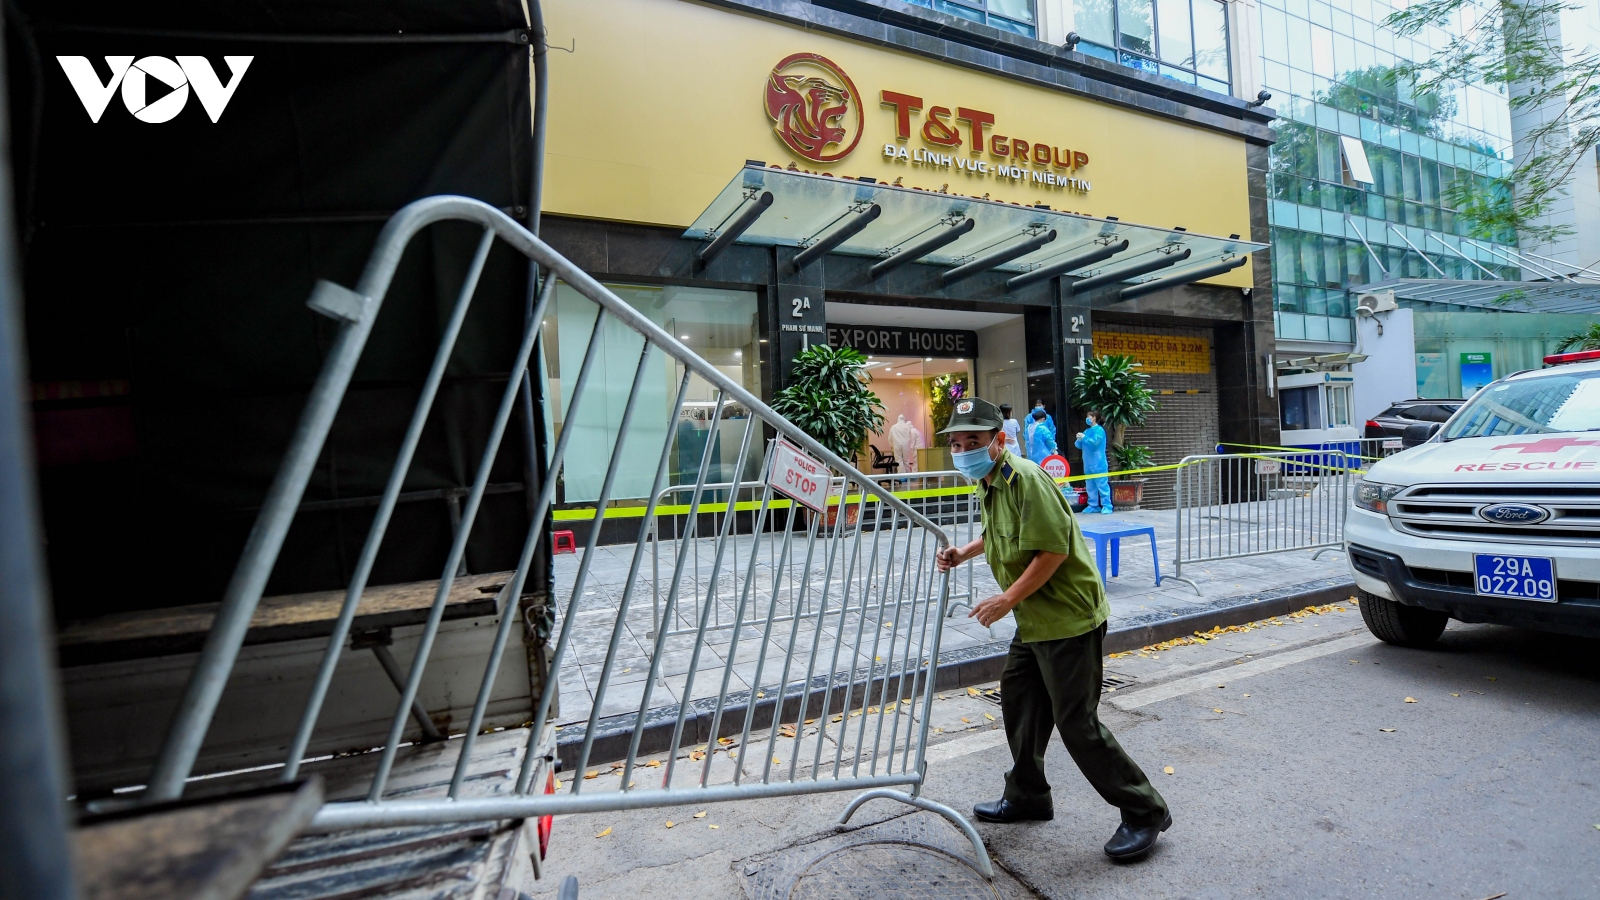 Phong tỏa tòa nhà Công ty T&T, nơi làm việc của bệnh nhân Covid-19 tại Hà Nội